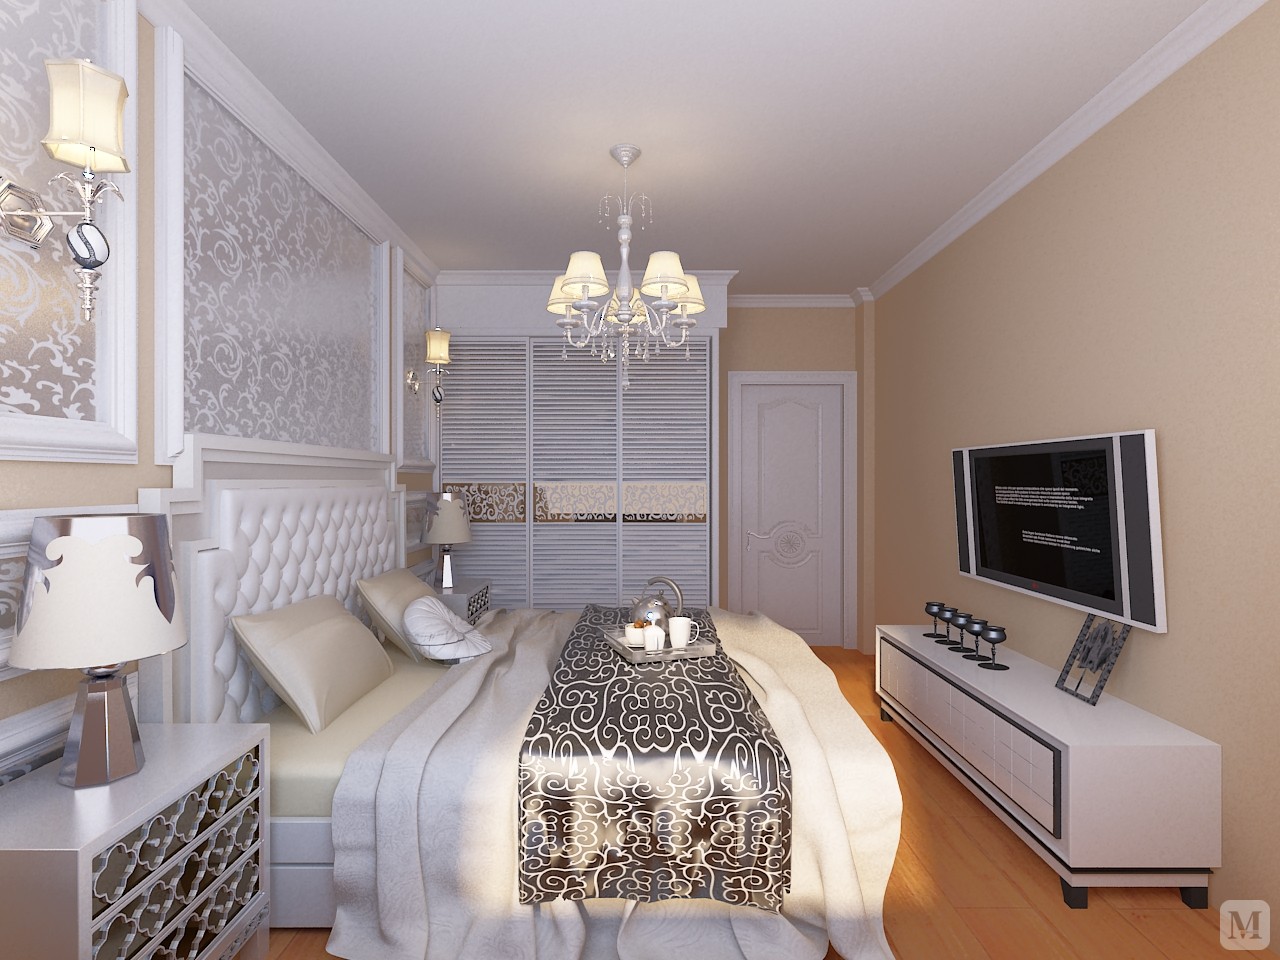 银色花纹壁纸做卧室床头背景墙装饰，恰好与床上布艺及衣柜门上的花板相呼应。